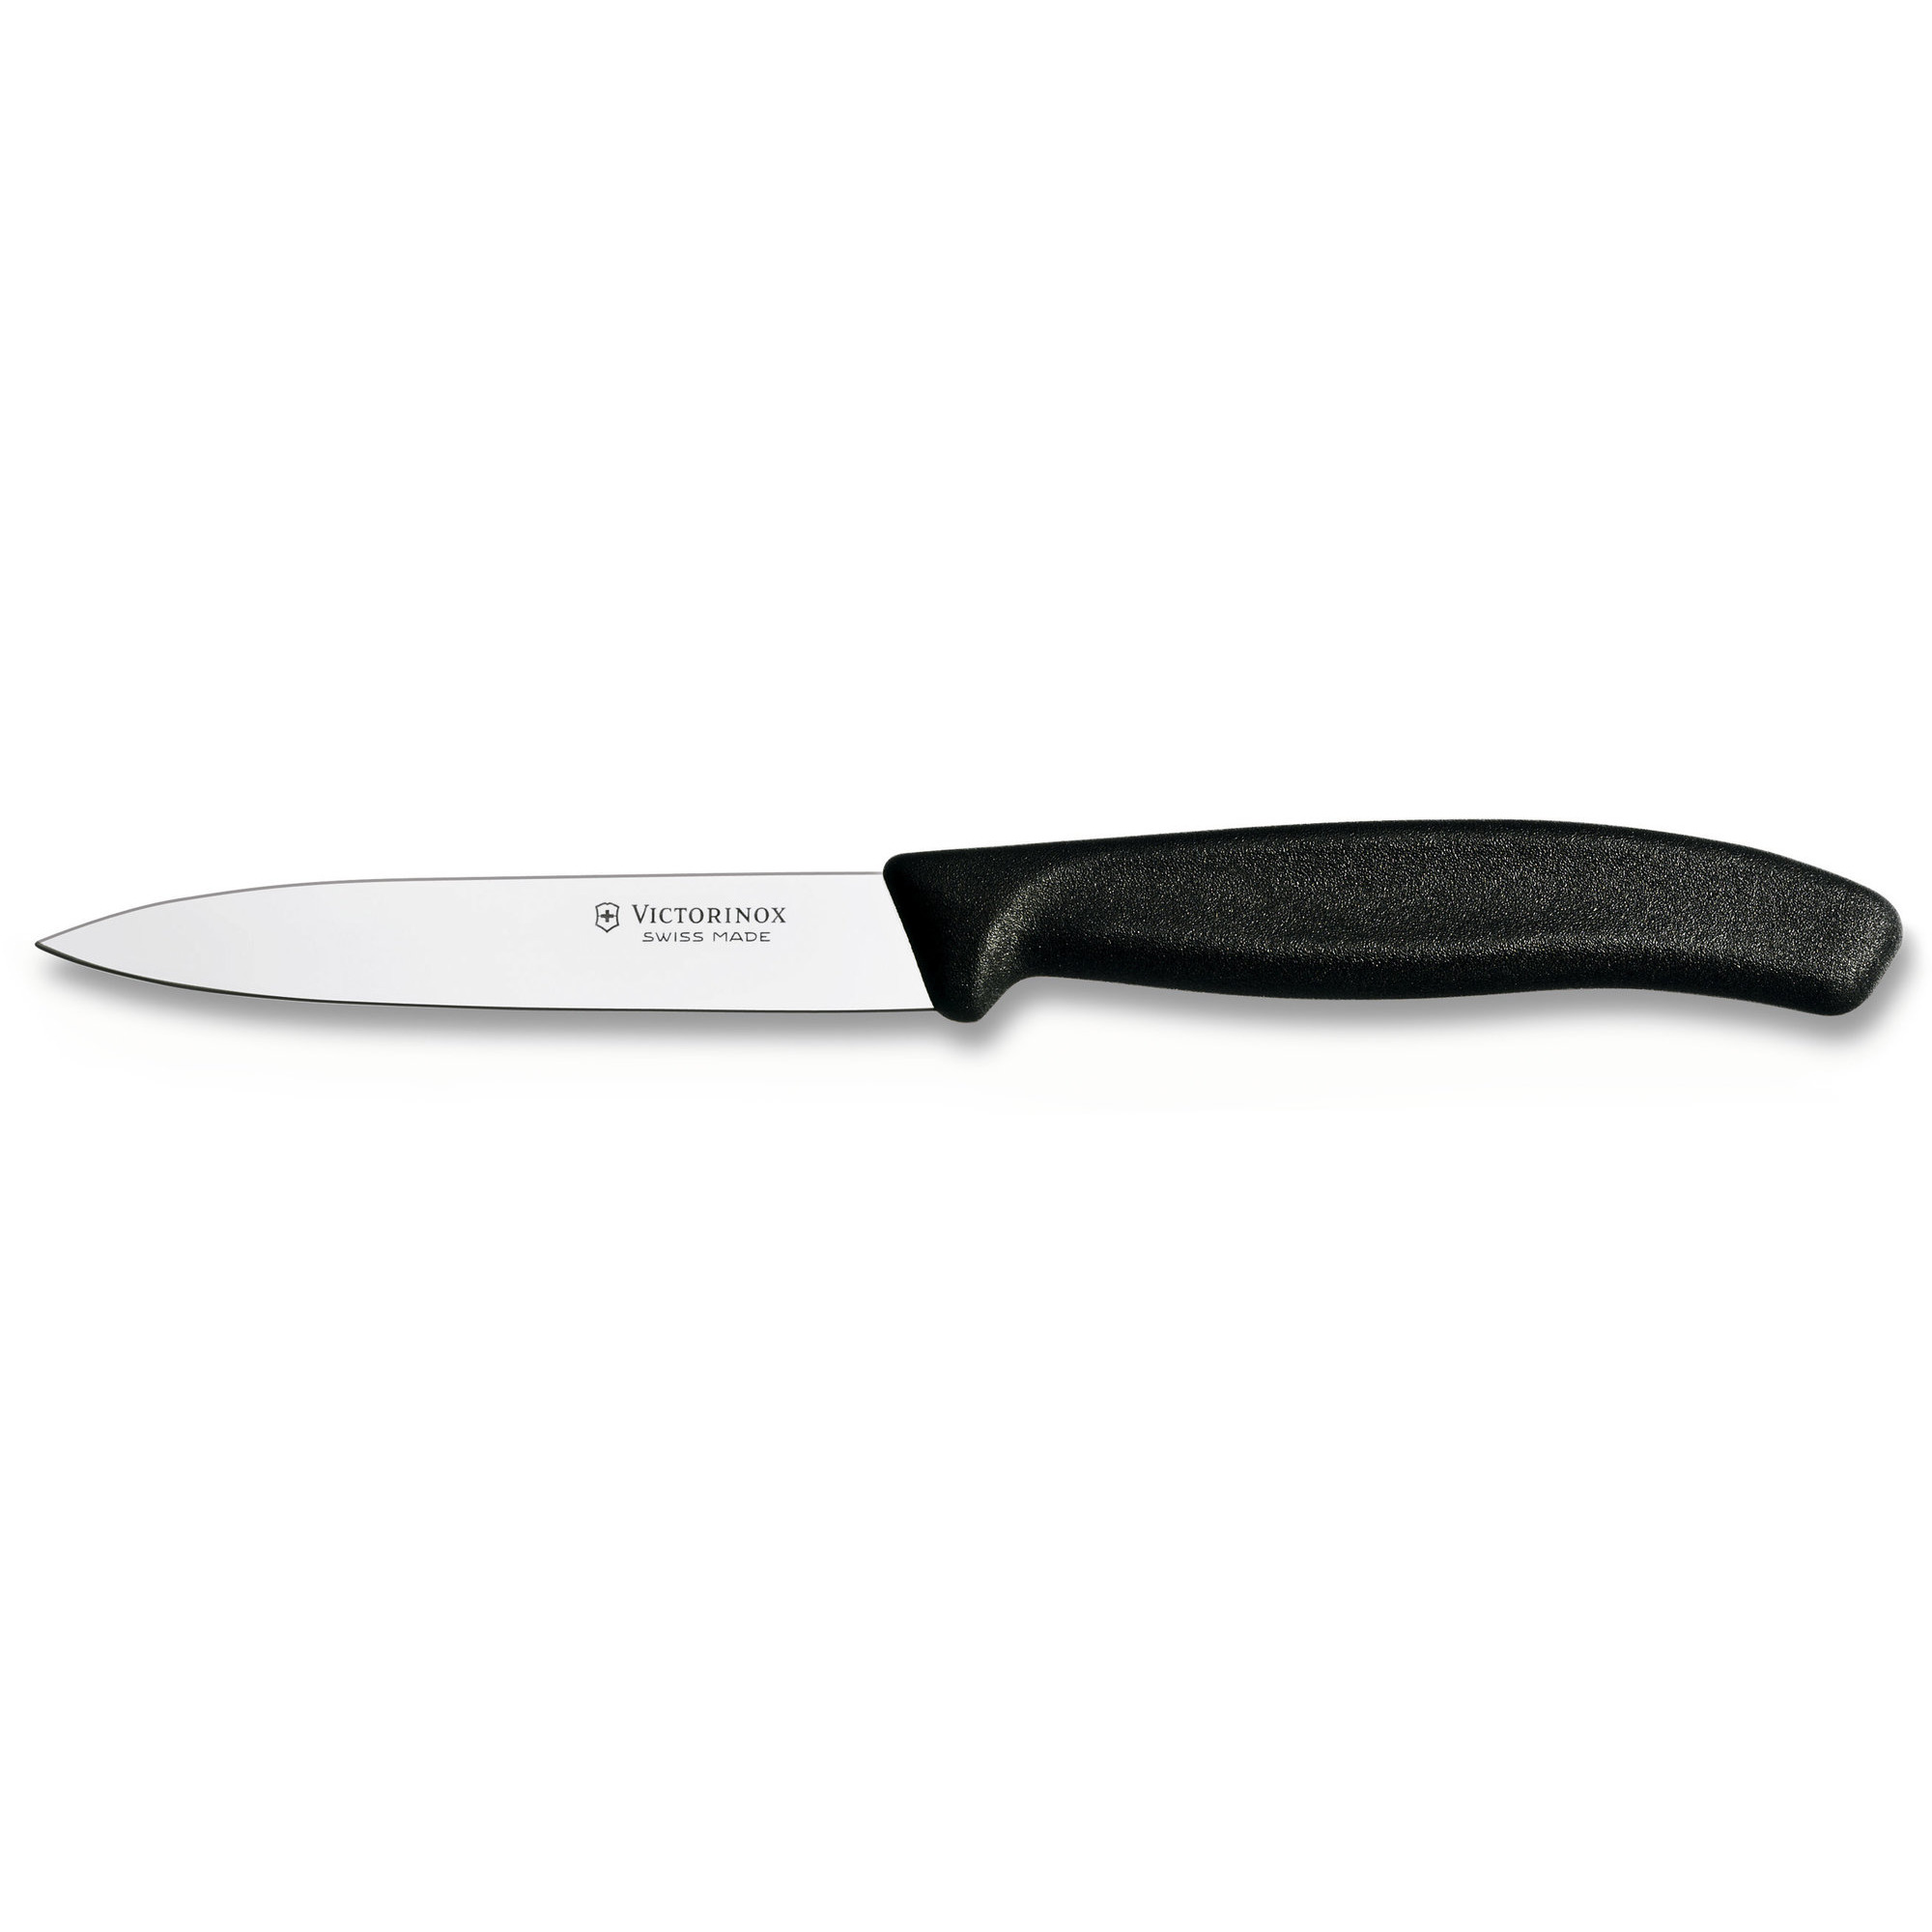 Victorinox Grøntsags- og skrællekniv med nylonhåndtag i sort, 10 cm.